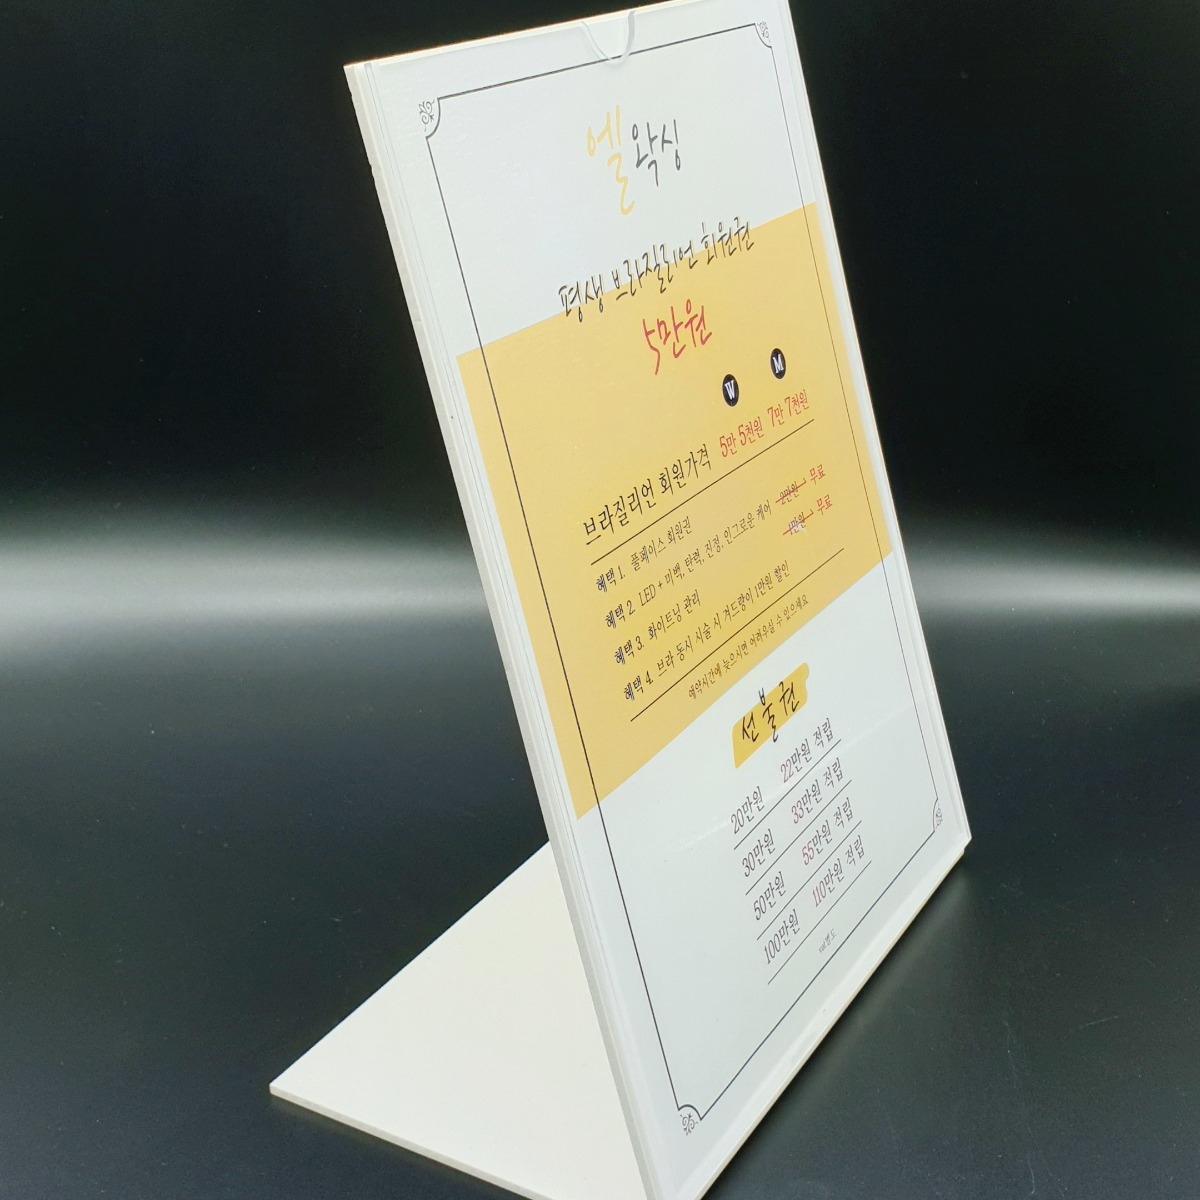 왁싱샵 세워두는 테이블메뉴판 제작 아크릴메뉴판 왁싱 가격표 안내판 소량 인쇄 6